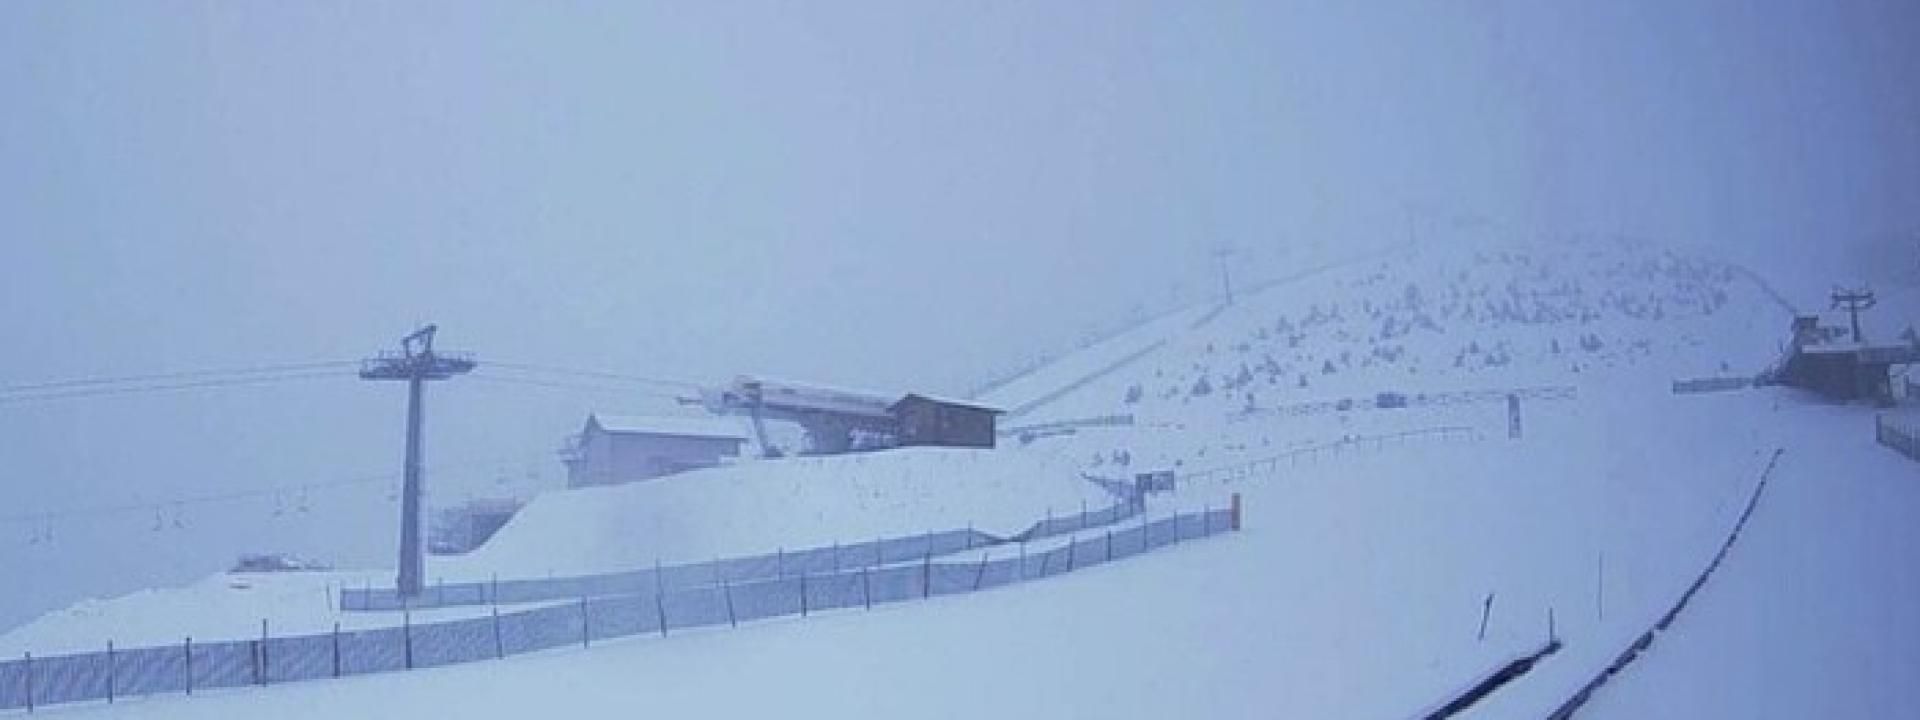 Marche - Torna la neve in montagna: a Frontignano sono circa 15 i cm di manto bianco